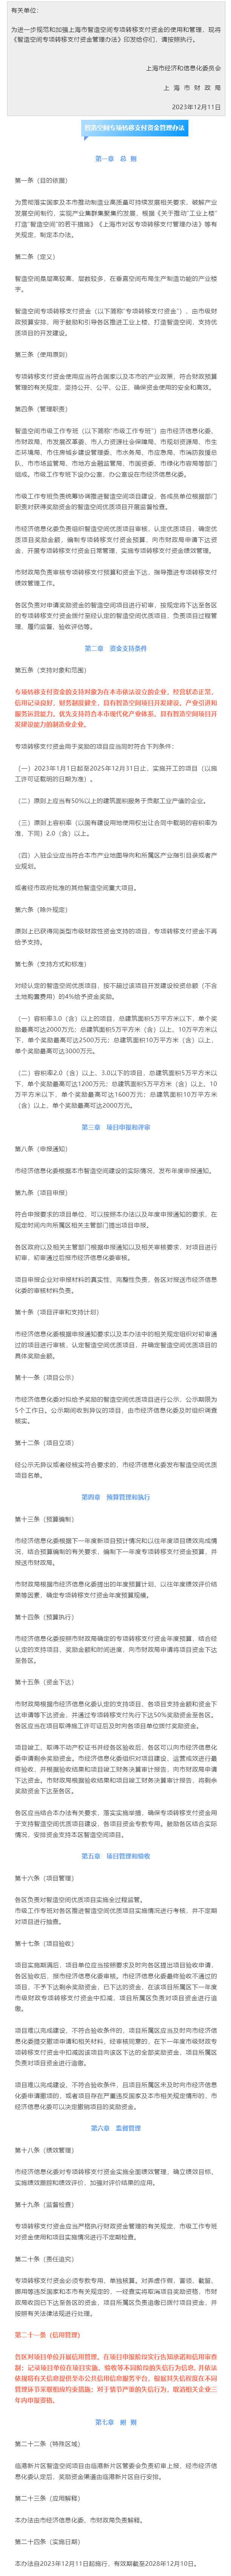 上海市经济和信息化委员会 上海市财政局关于印发 《智造空间专项转移支付资金管理办法》的通知.png